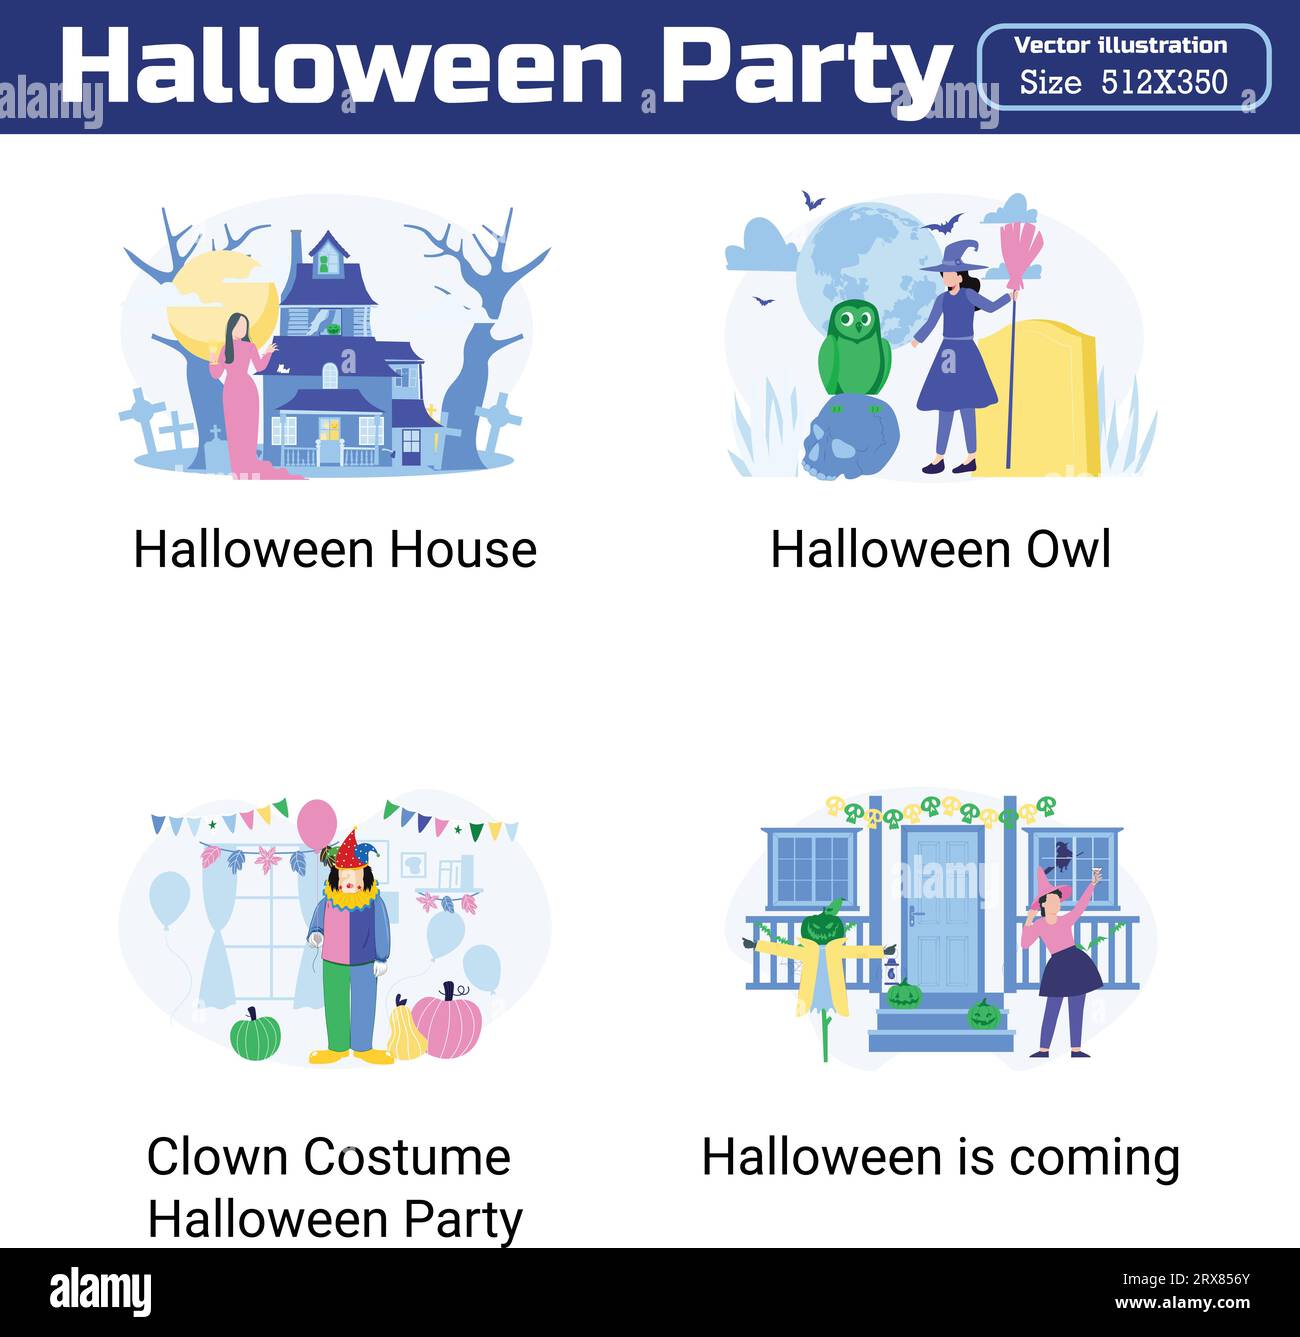 Halloween Party Illustration 20 unique concepts flat design vector illustration concepts. Stock Vector